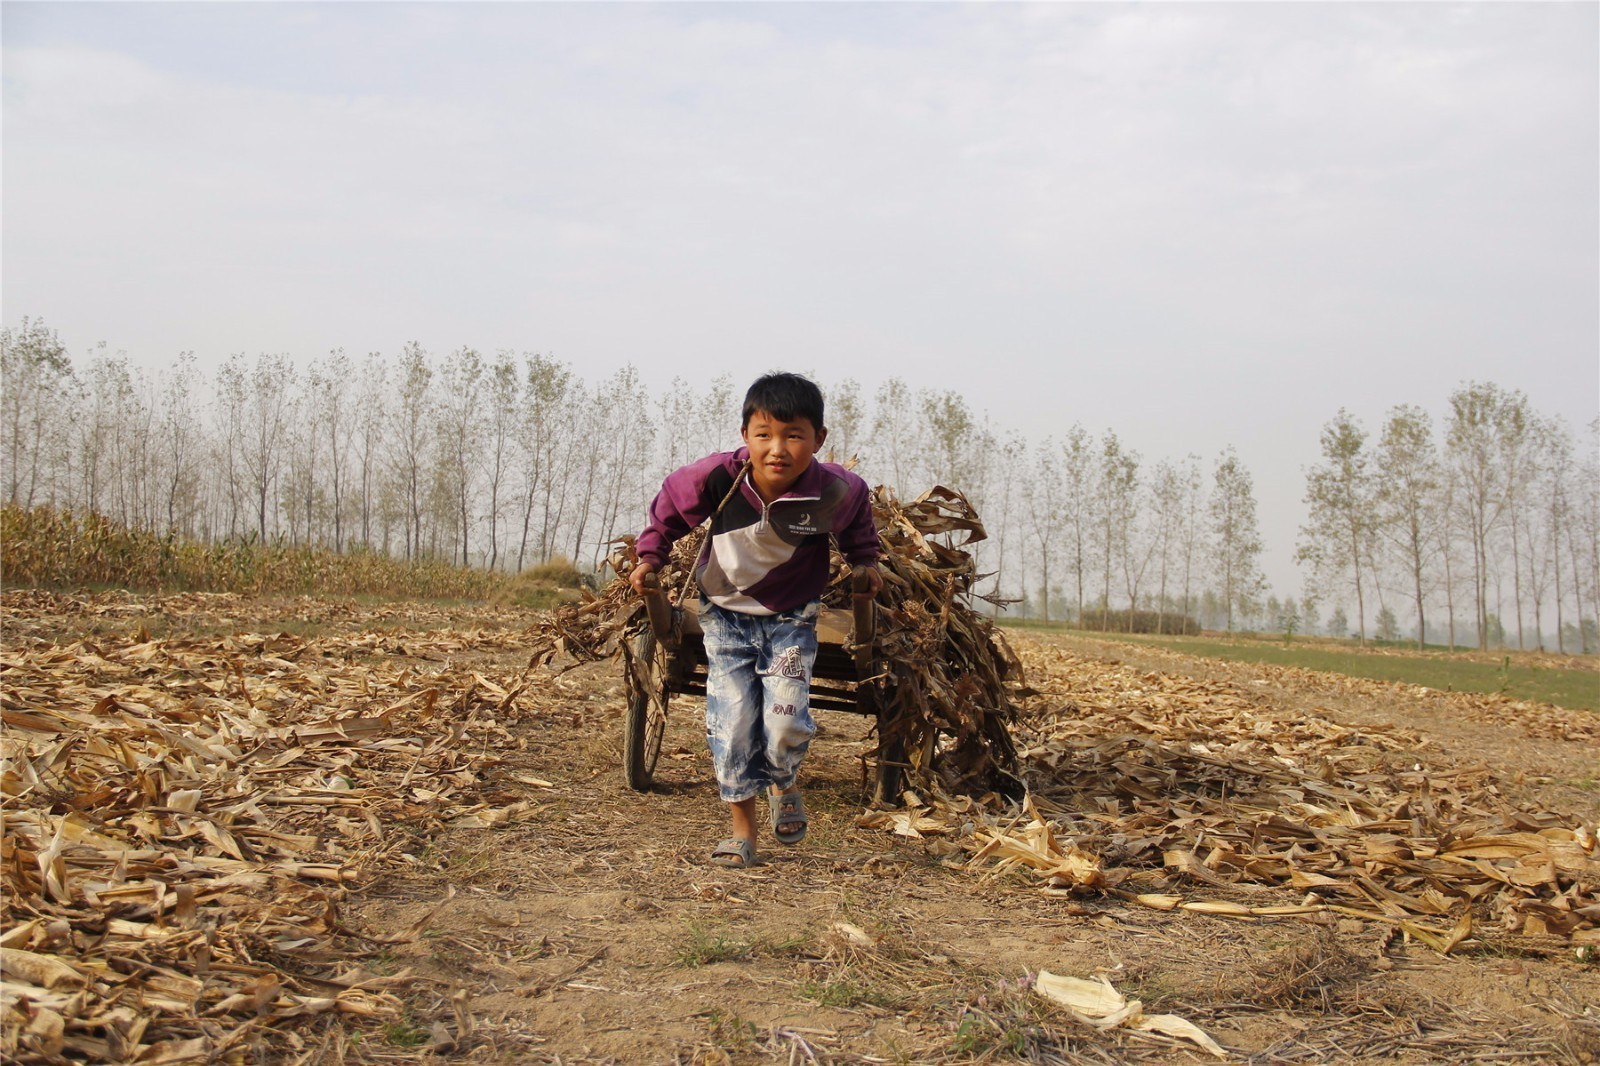 【转】北京时间 农村孩子这样生活:手拉排车随母亲出摊